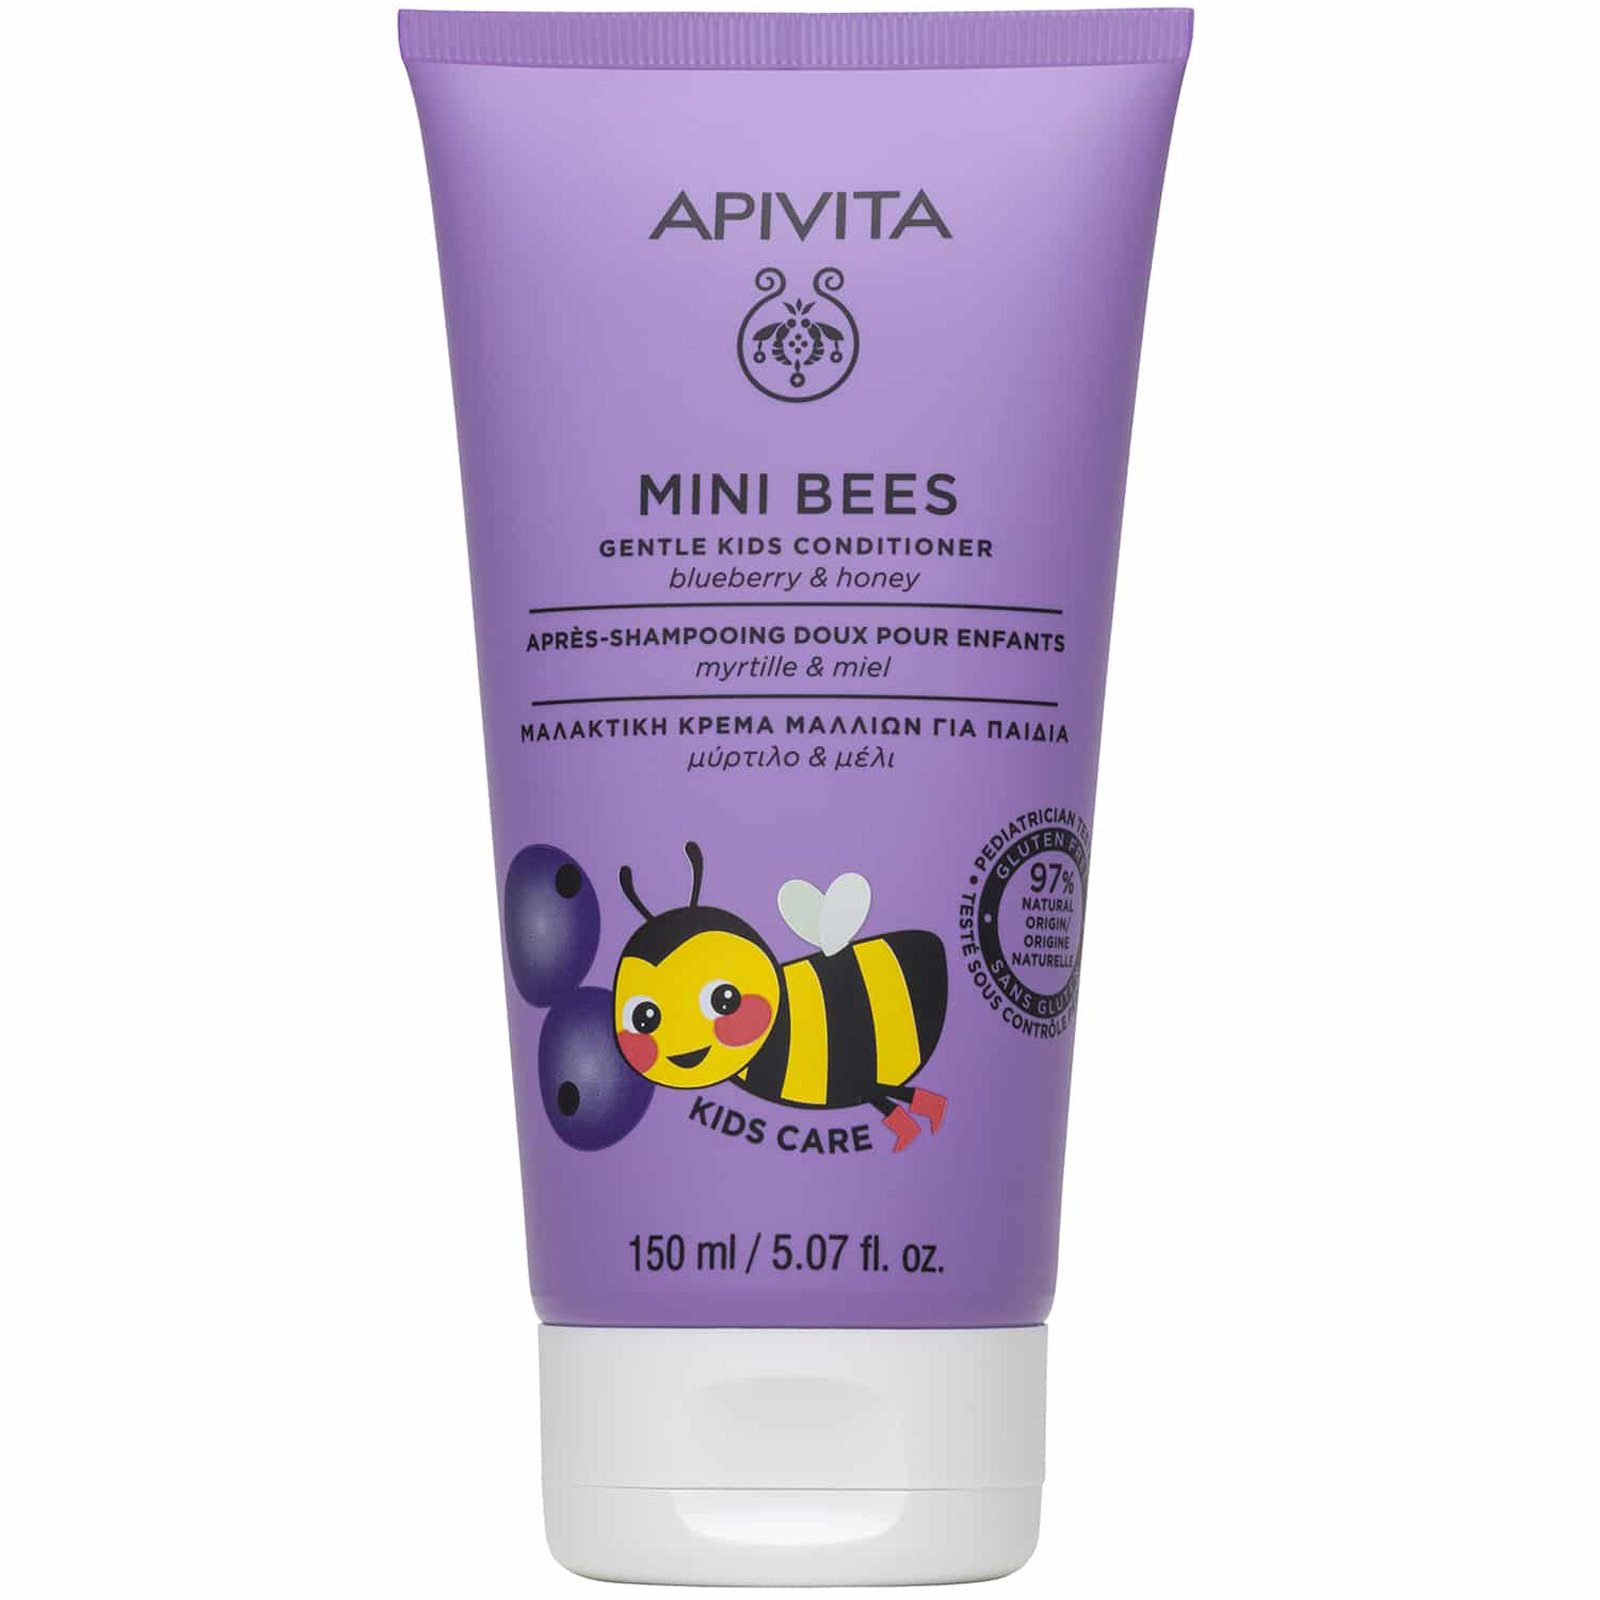 Apivita Mini Bees Gentle Kids Conditioner Μαλακτική Κρέμα Μαλλιών για Παιδιά με Μύρτιλο & Μέλι 150ml 47685